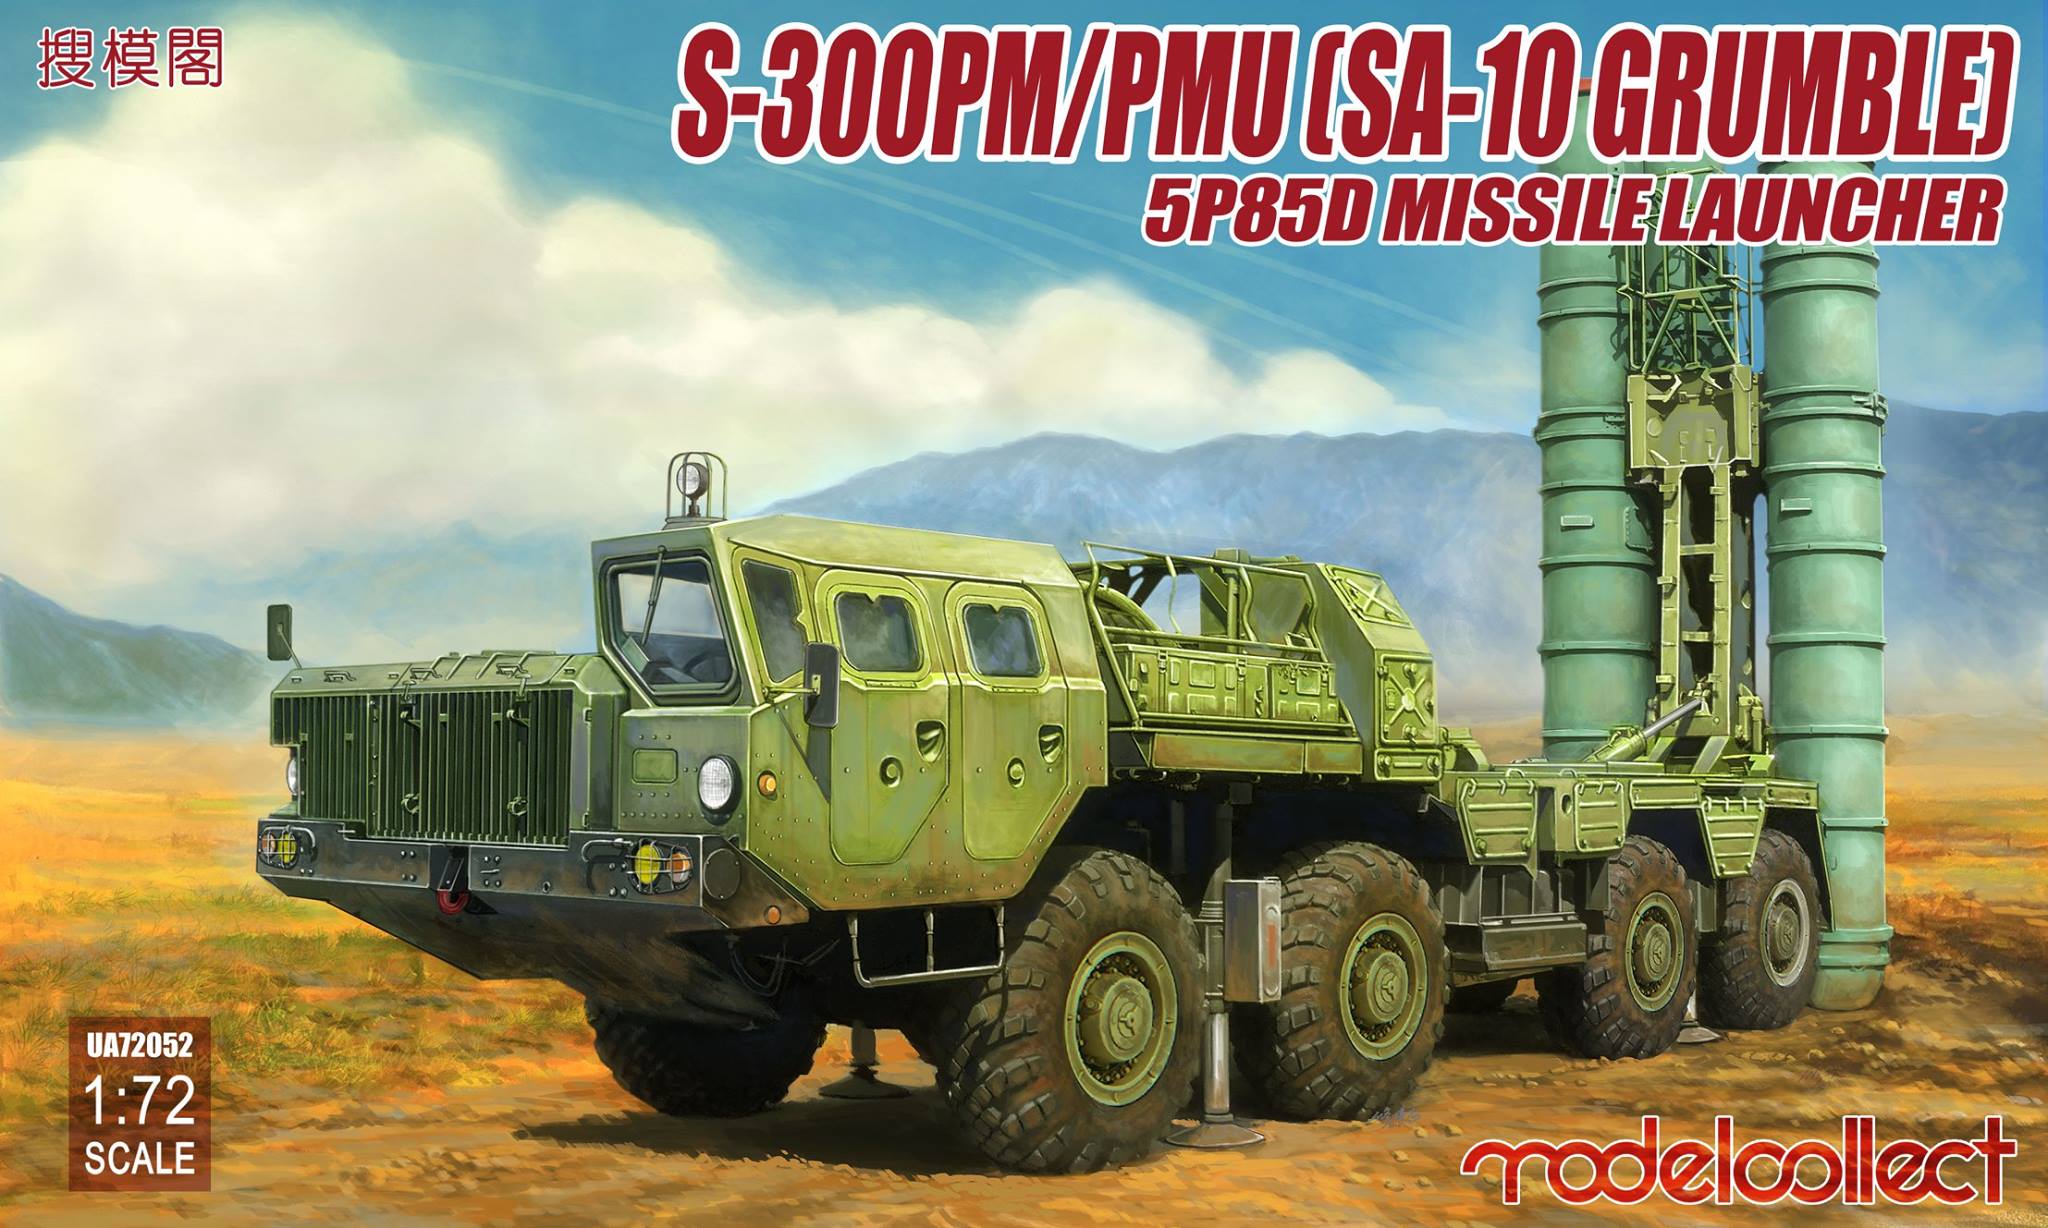 S-300PM/PMU (SA-10 Grumble) 5P85D